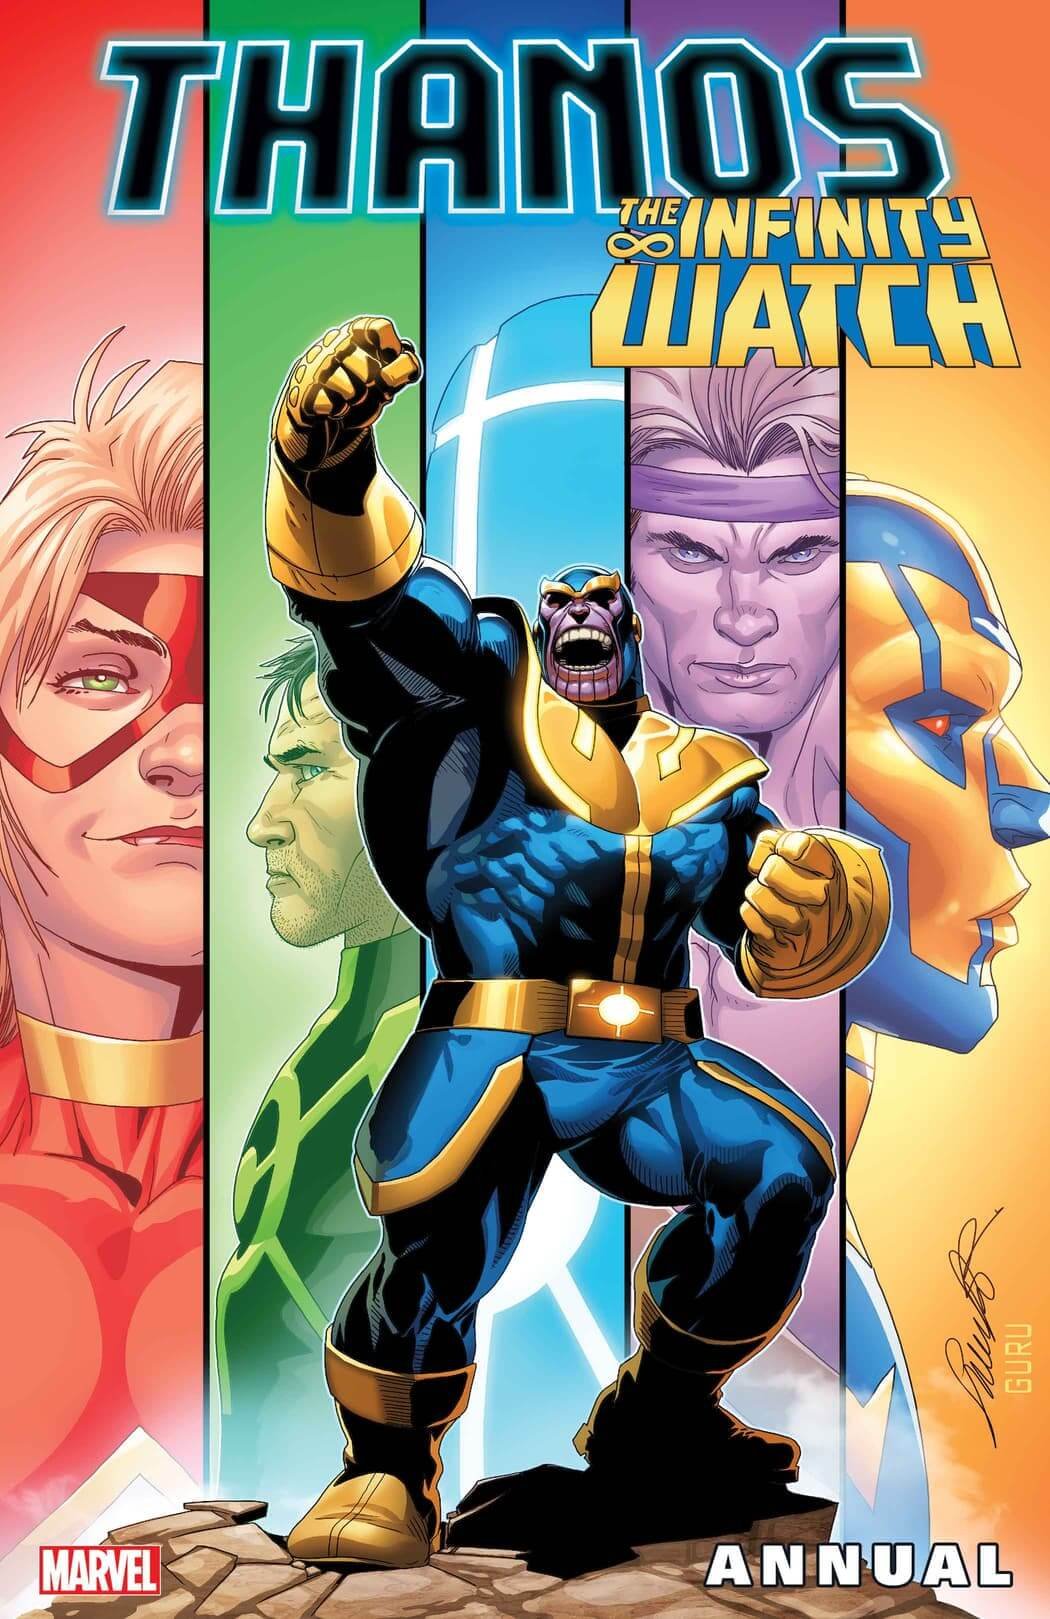 Couverture de Thanos Annual 1 par Salvador Larroca, premier chapitre d'Infinity Watch.